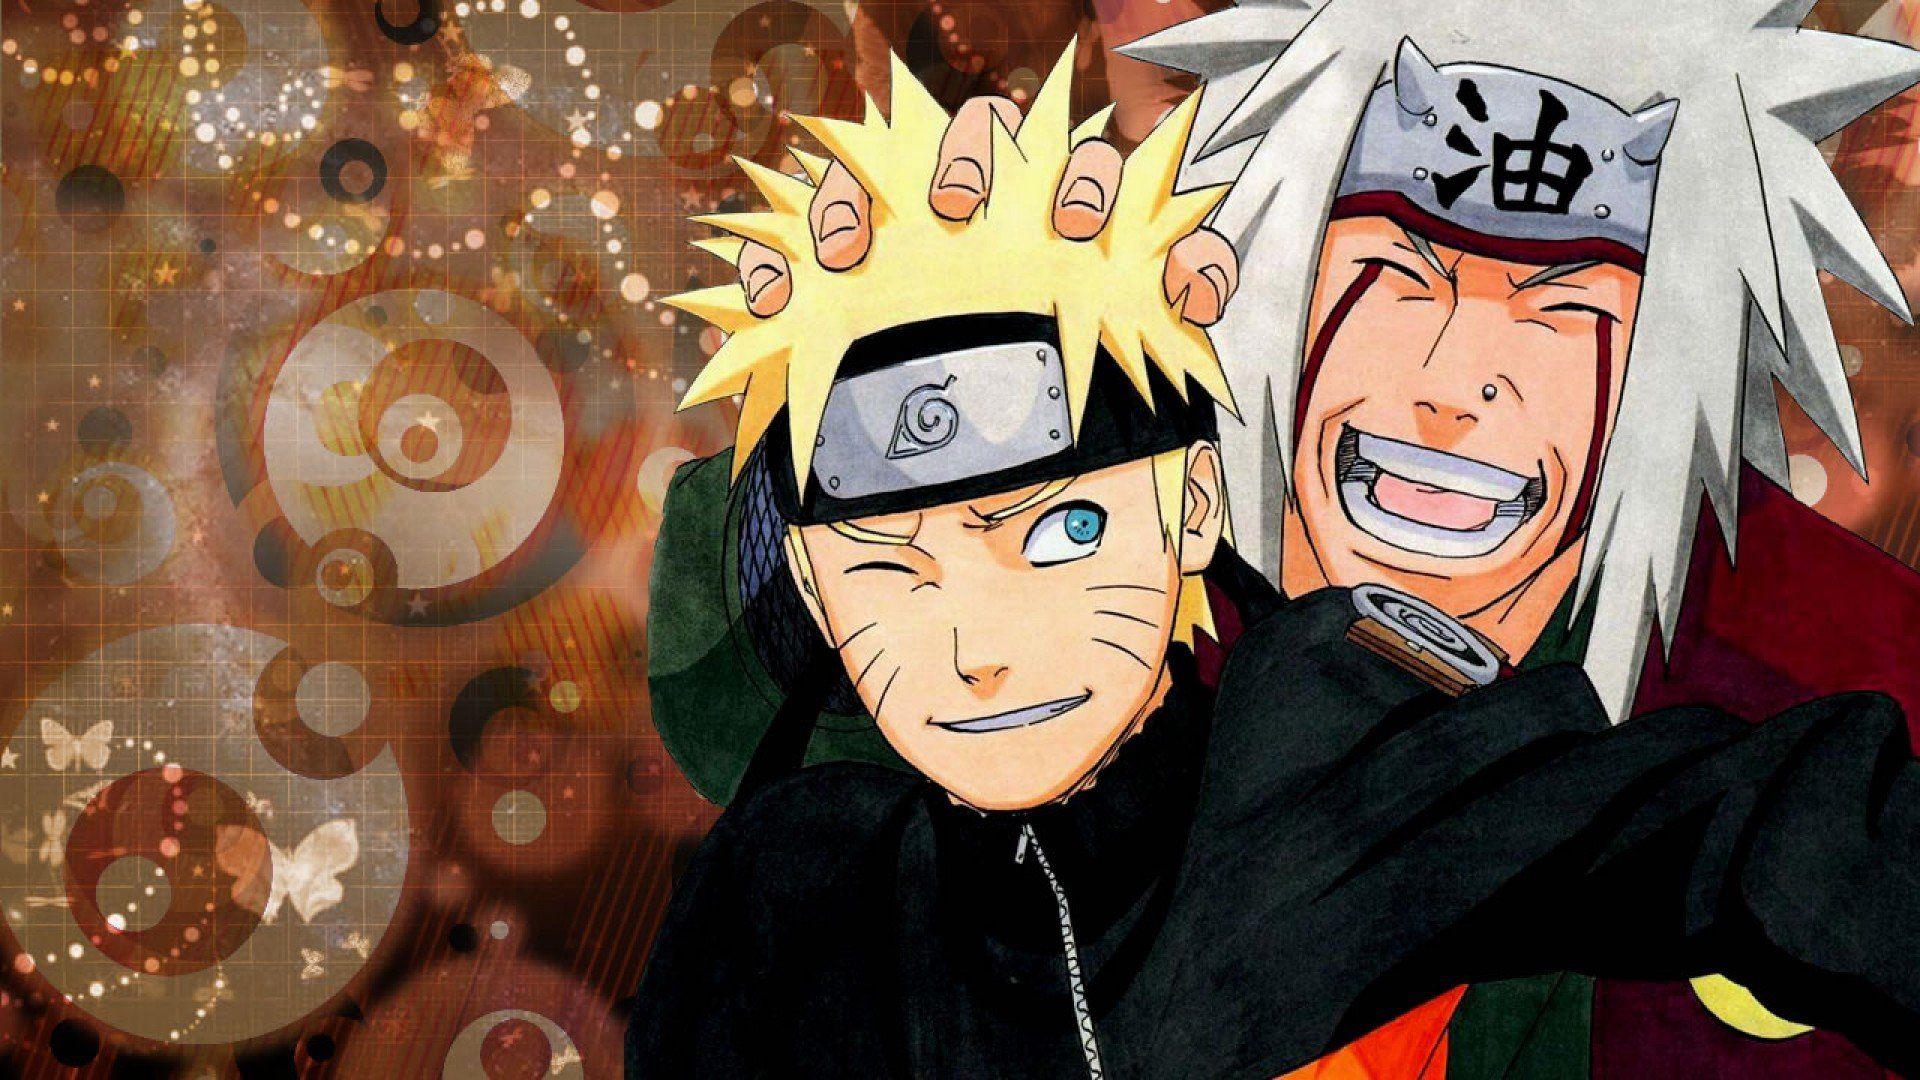 Naruto And Jiraiya Wallpaper. N a r u t o. Naruto, Naruto